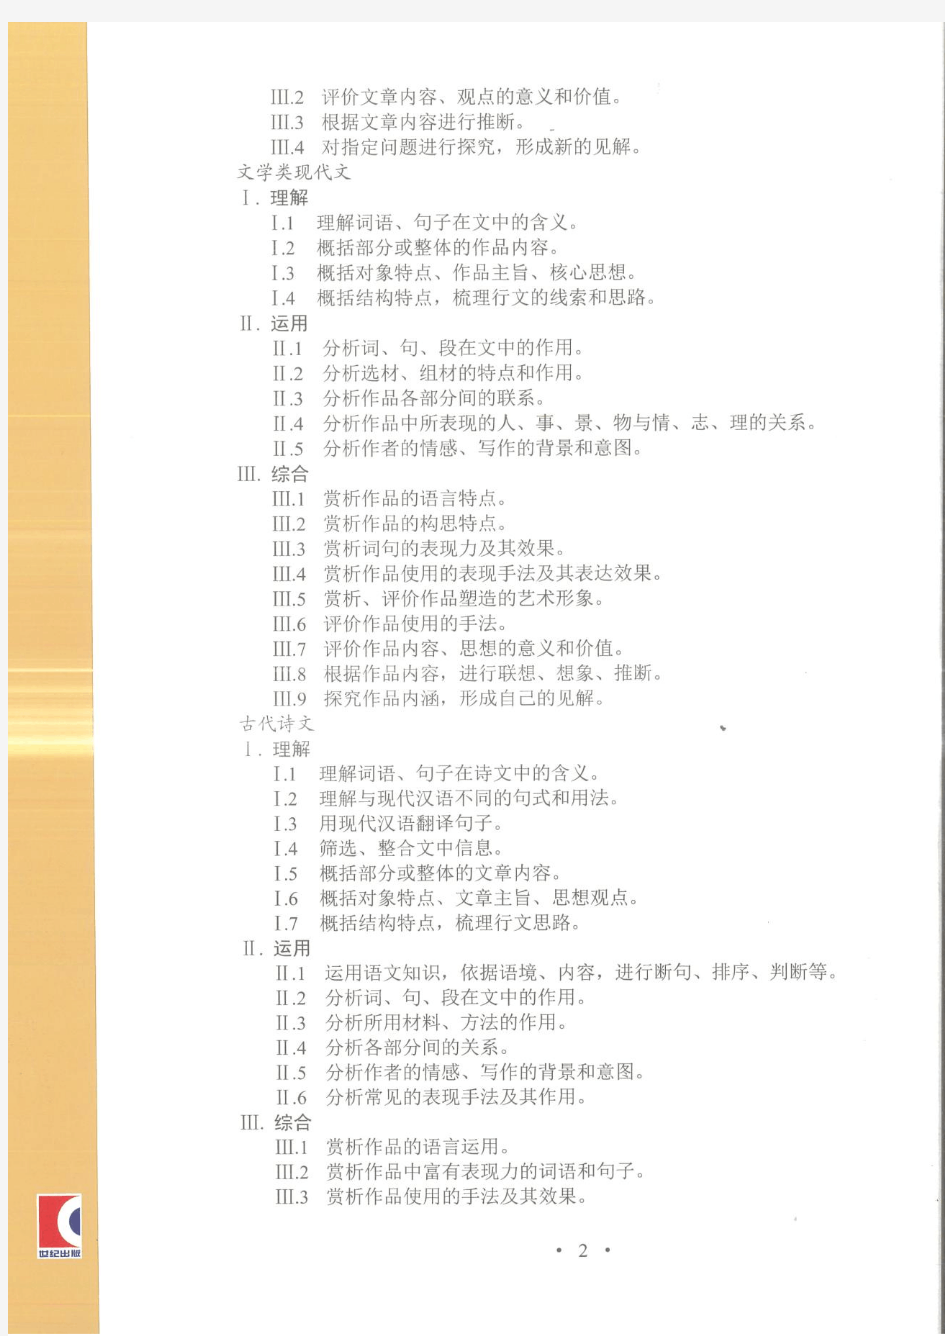 2021年上海高考考试手册(语文)-扫描版2